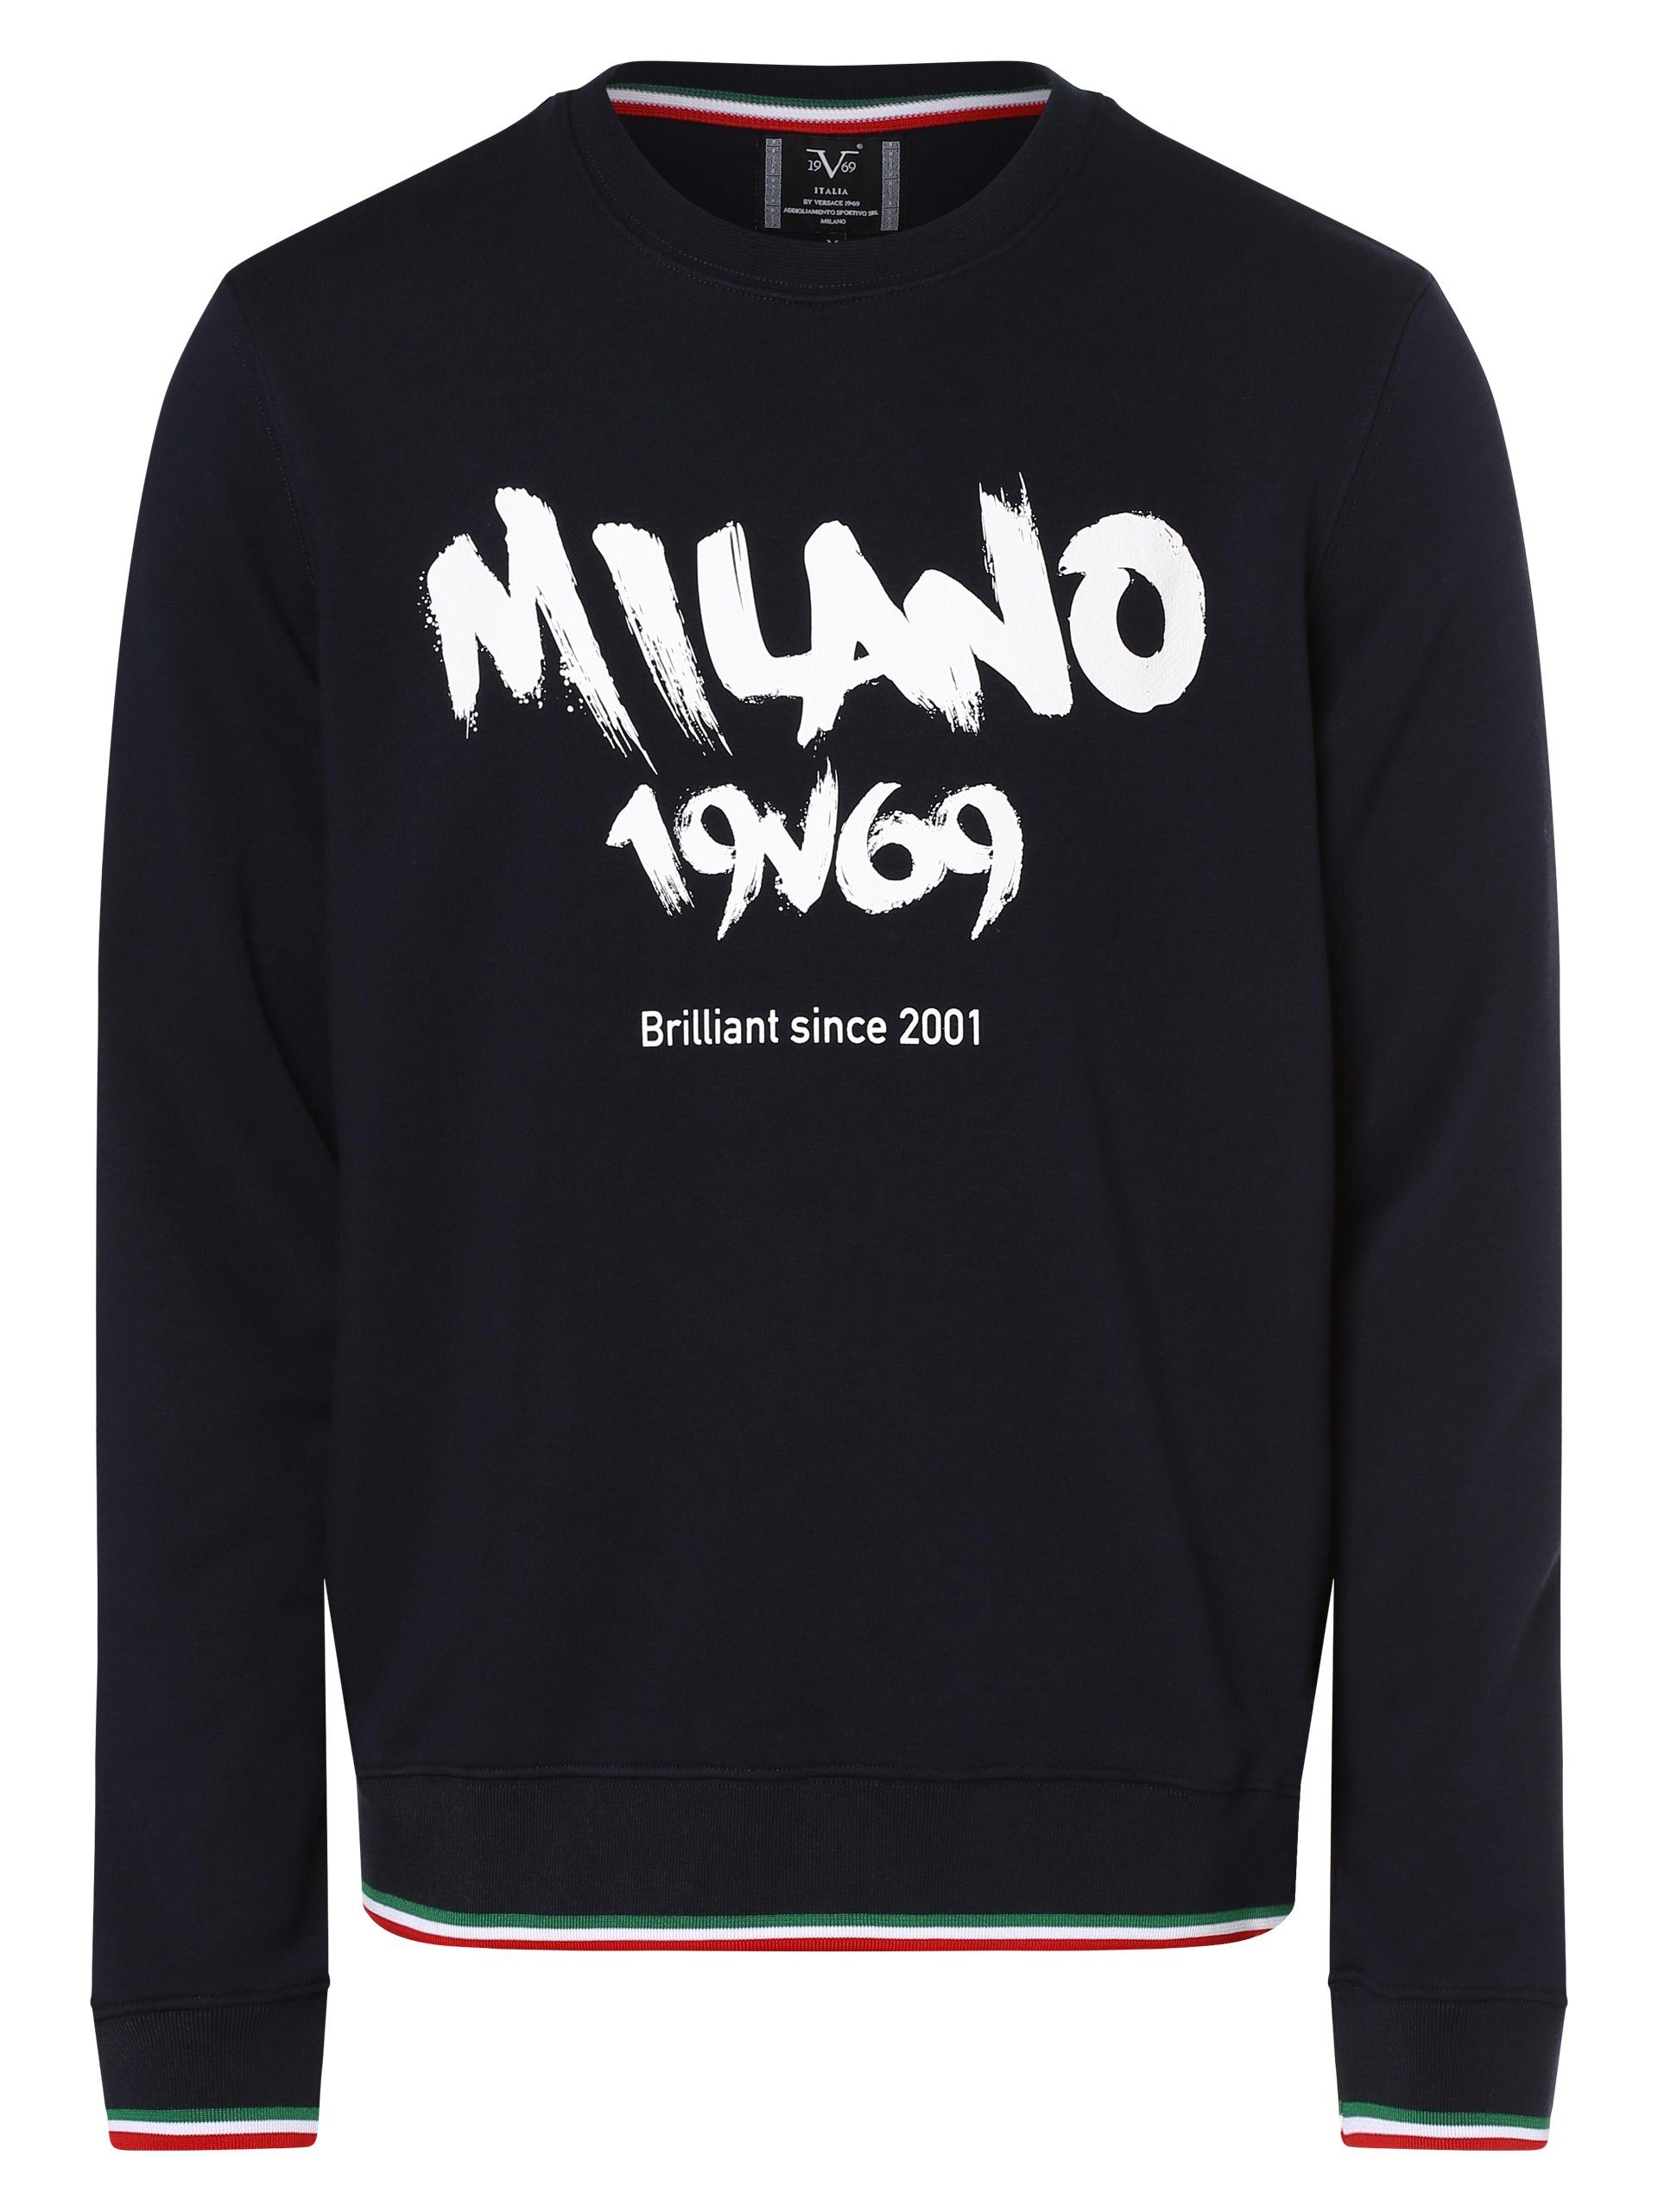 Versace Italia 19V69 Ernesto Italia Sweatshirt by 19V69